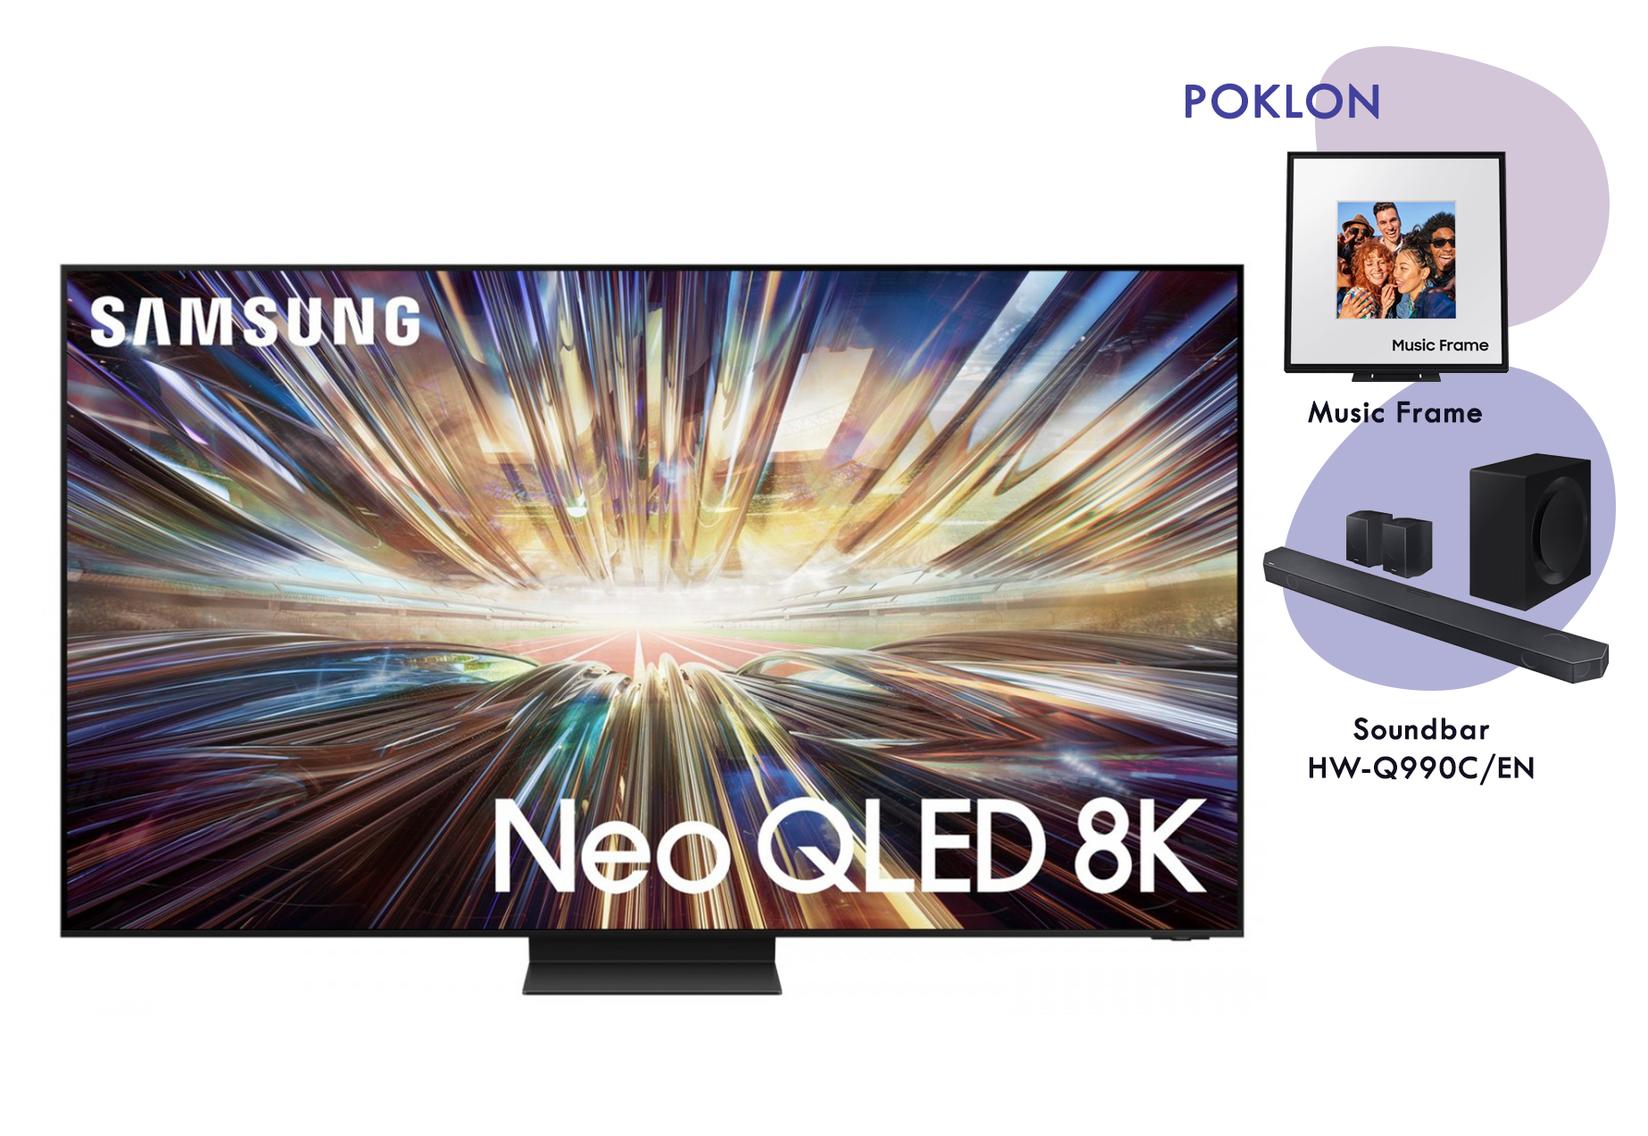 Samsung  QE85QN800DTXXH Smart Televizor, 85", 8K Neo QLED, Crni